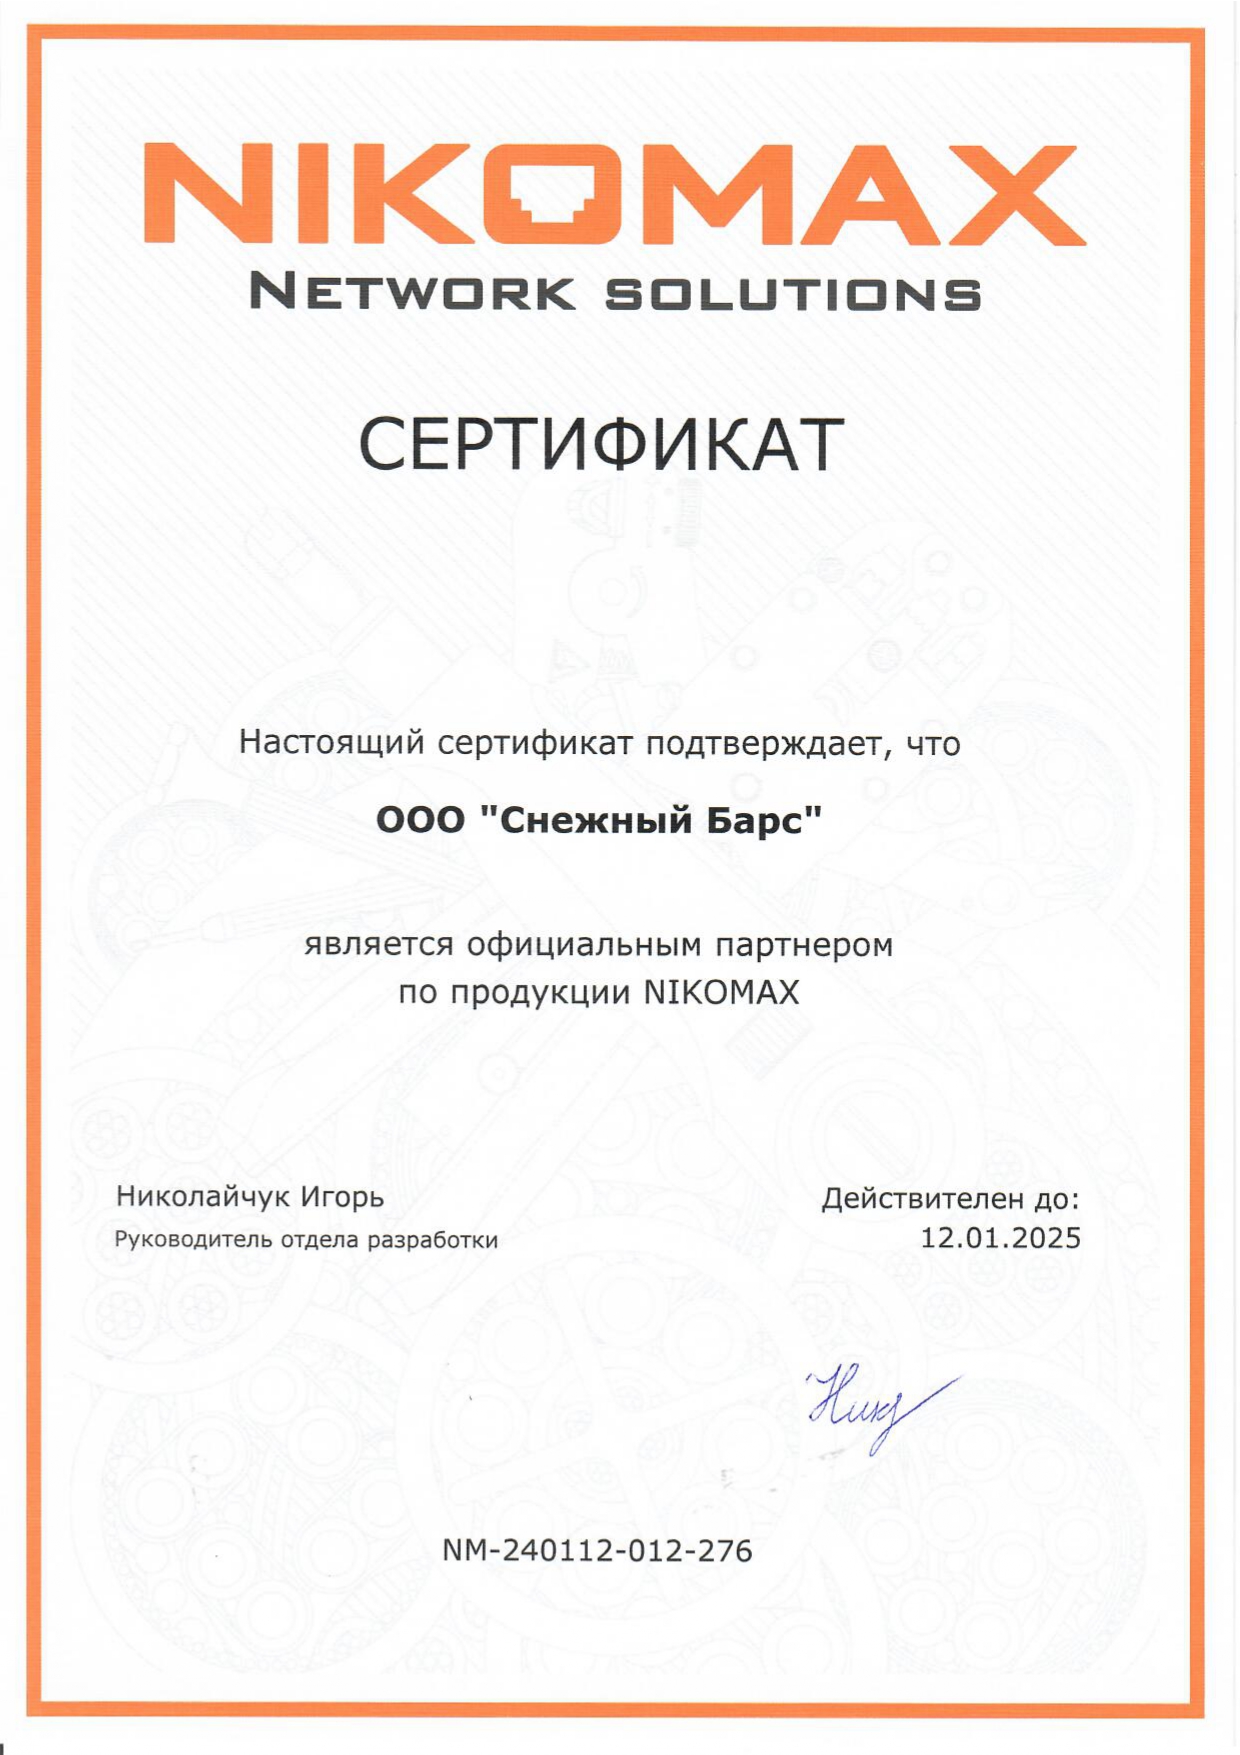 Сертификат официального партнера по продукции Nikomax